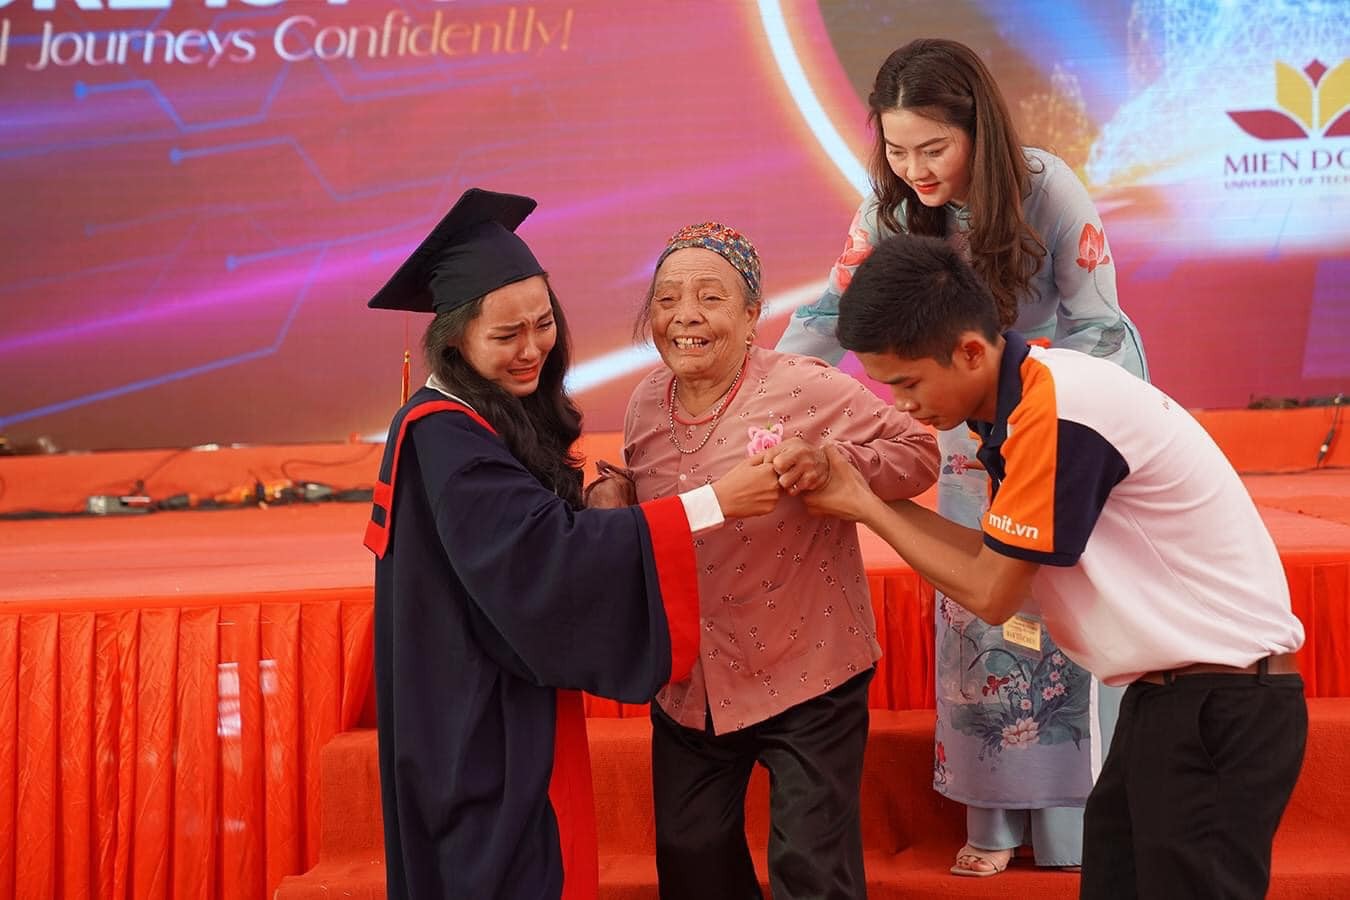 Câu chuyện xúc động bà nội 83 tuổi vượt gần 2000km dự lễ tốt nghiệp đại học của cháu gái - ảnh 4